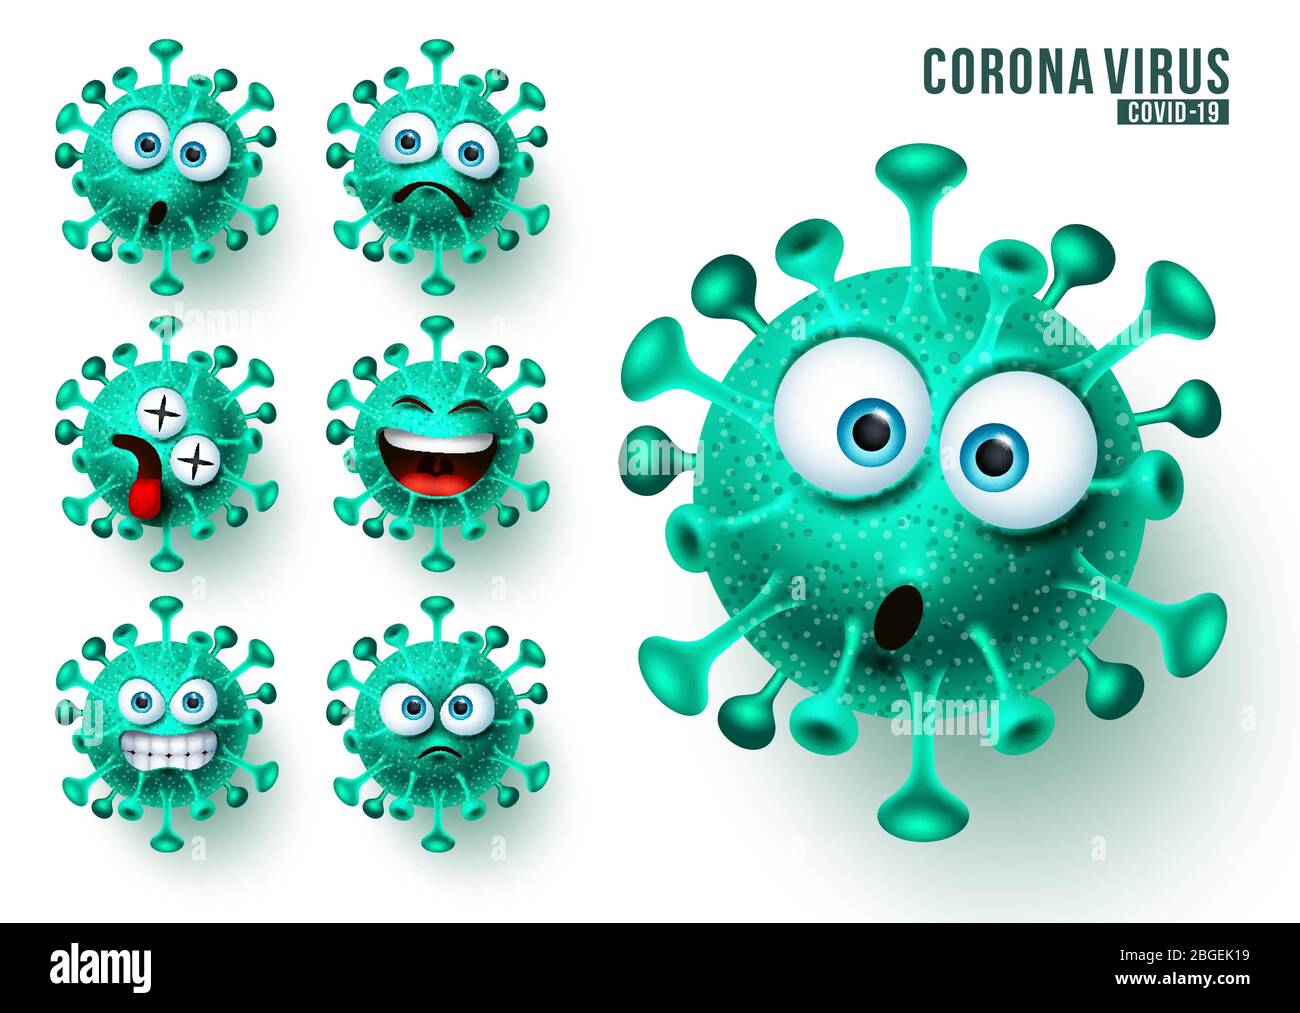 Covid19 ncov Emojis Vektorsatz. Corona Virus covid19 Emojis und Emoticons mit gruseligen und wütenden Gesichtsausdrücken für virale globale Pandemie. Stock Vektor